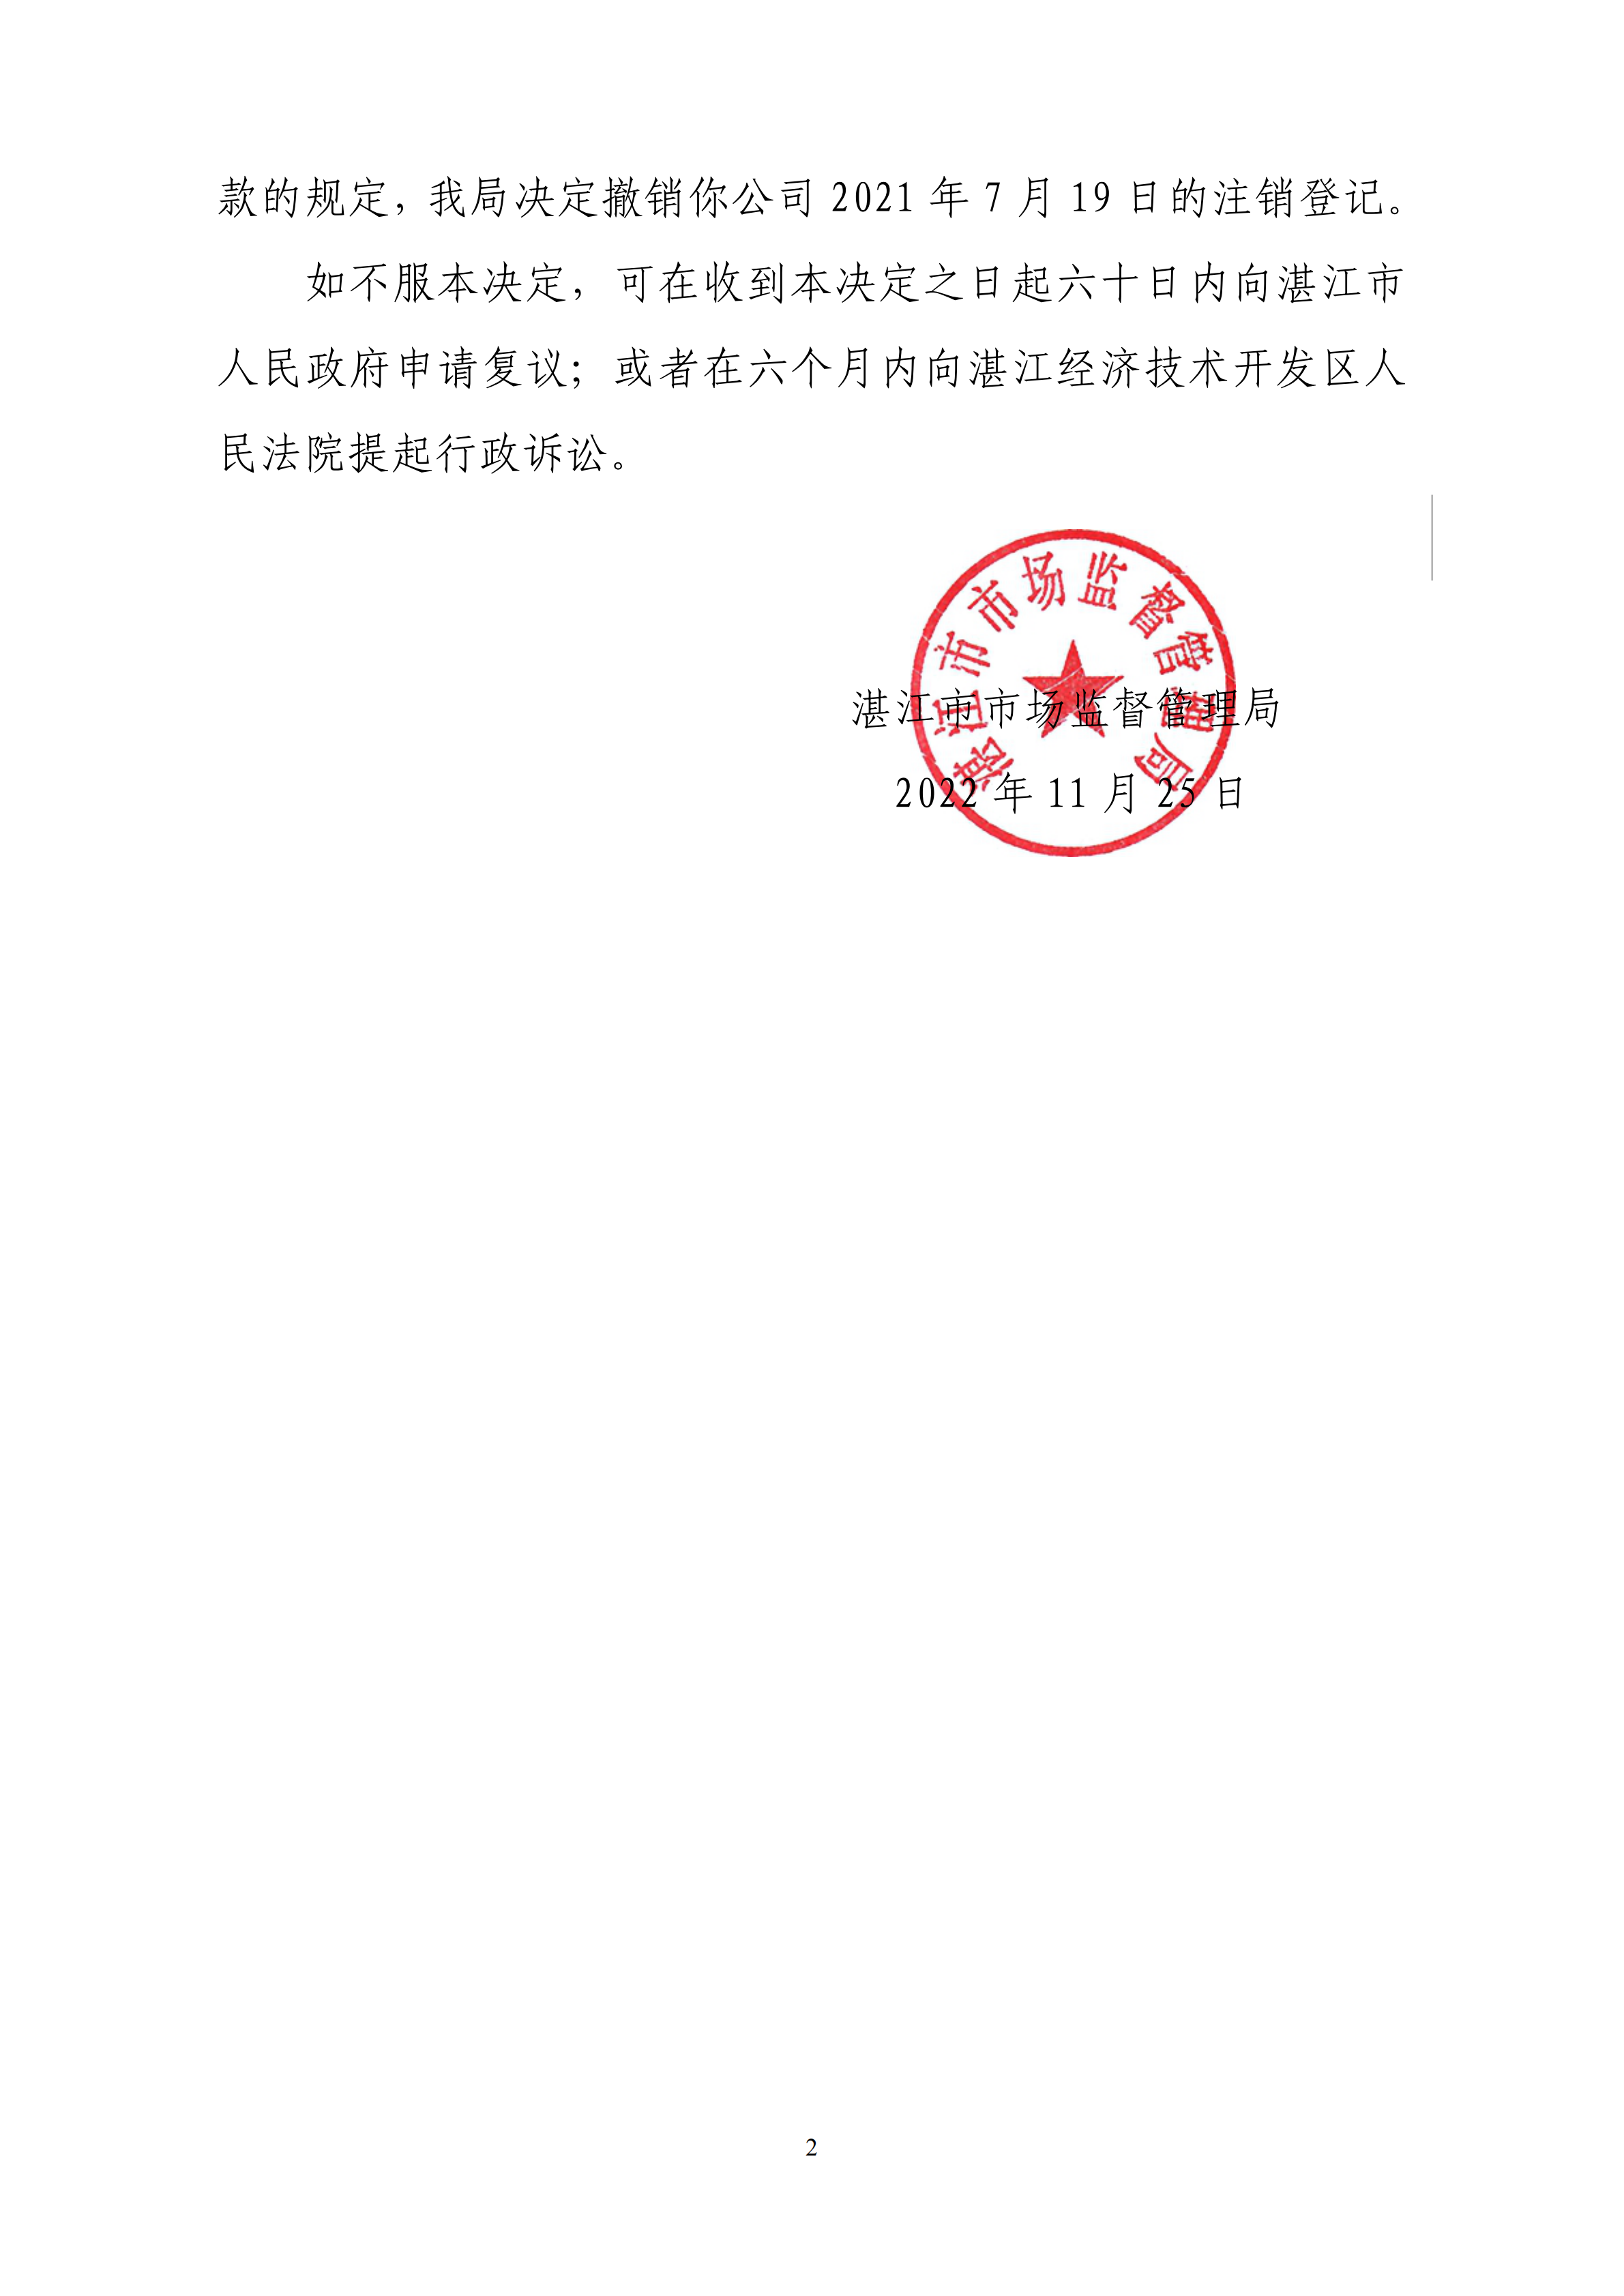 湛江市市场监督管理局撤销登记决定书_01.png